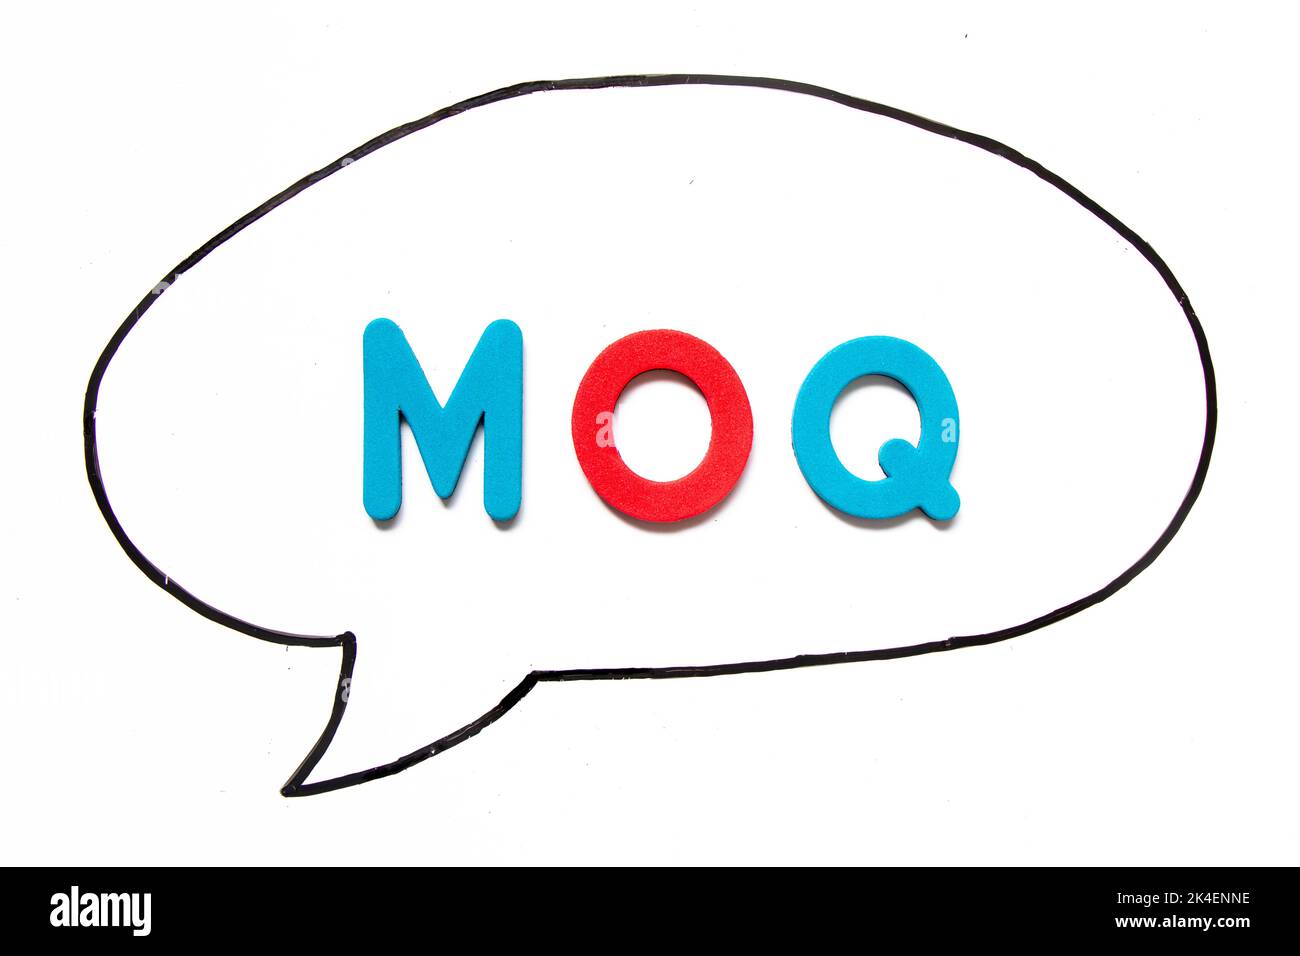 Buchstabenbuchstabe mit dem Wort MOQ (Abkürzung für Minimum Order Quantity) in schwarzer Linienhandzeichnung als Blasenrede auf Whiteboard-Hintergrund Stockfoto